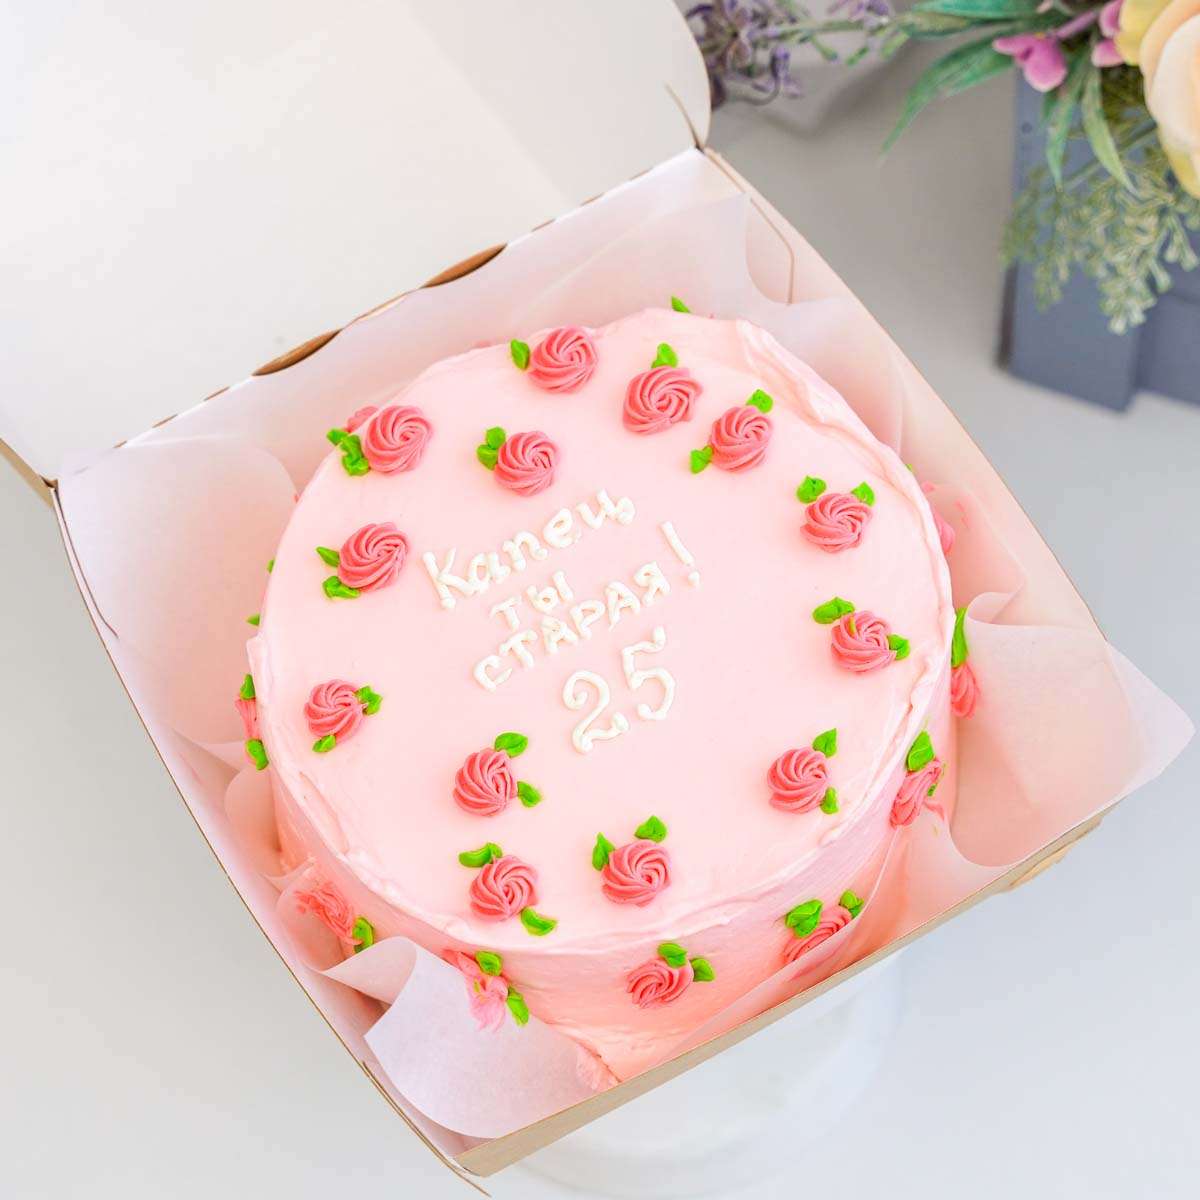 розовый торт с приколом